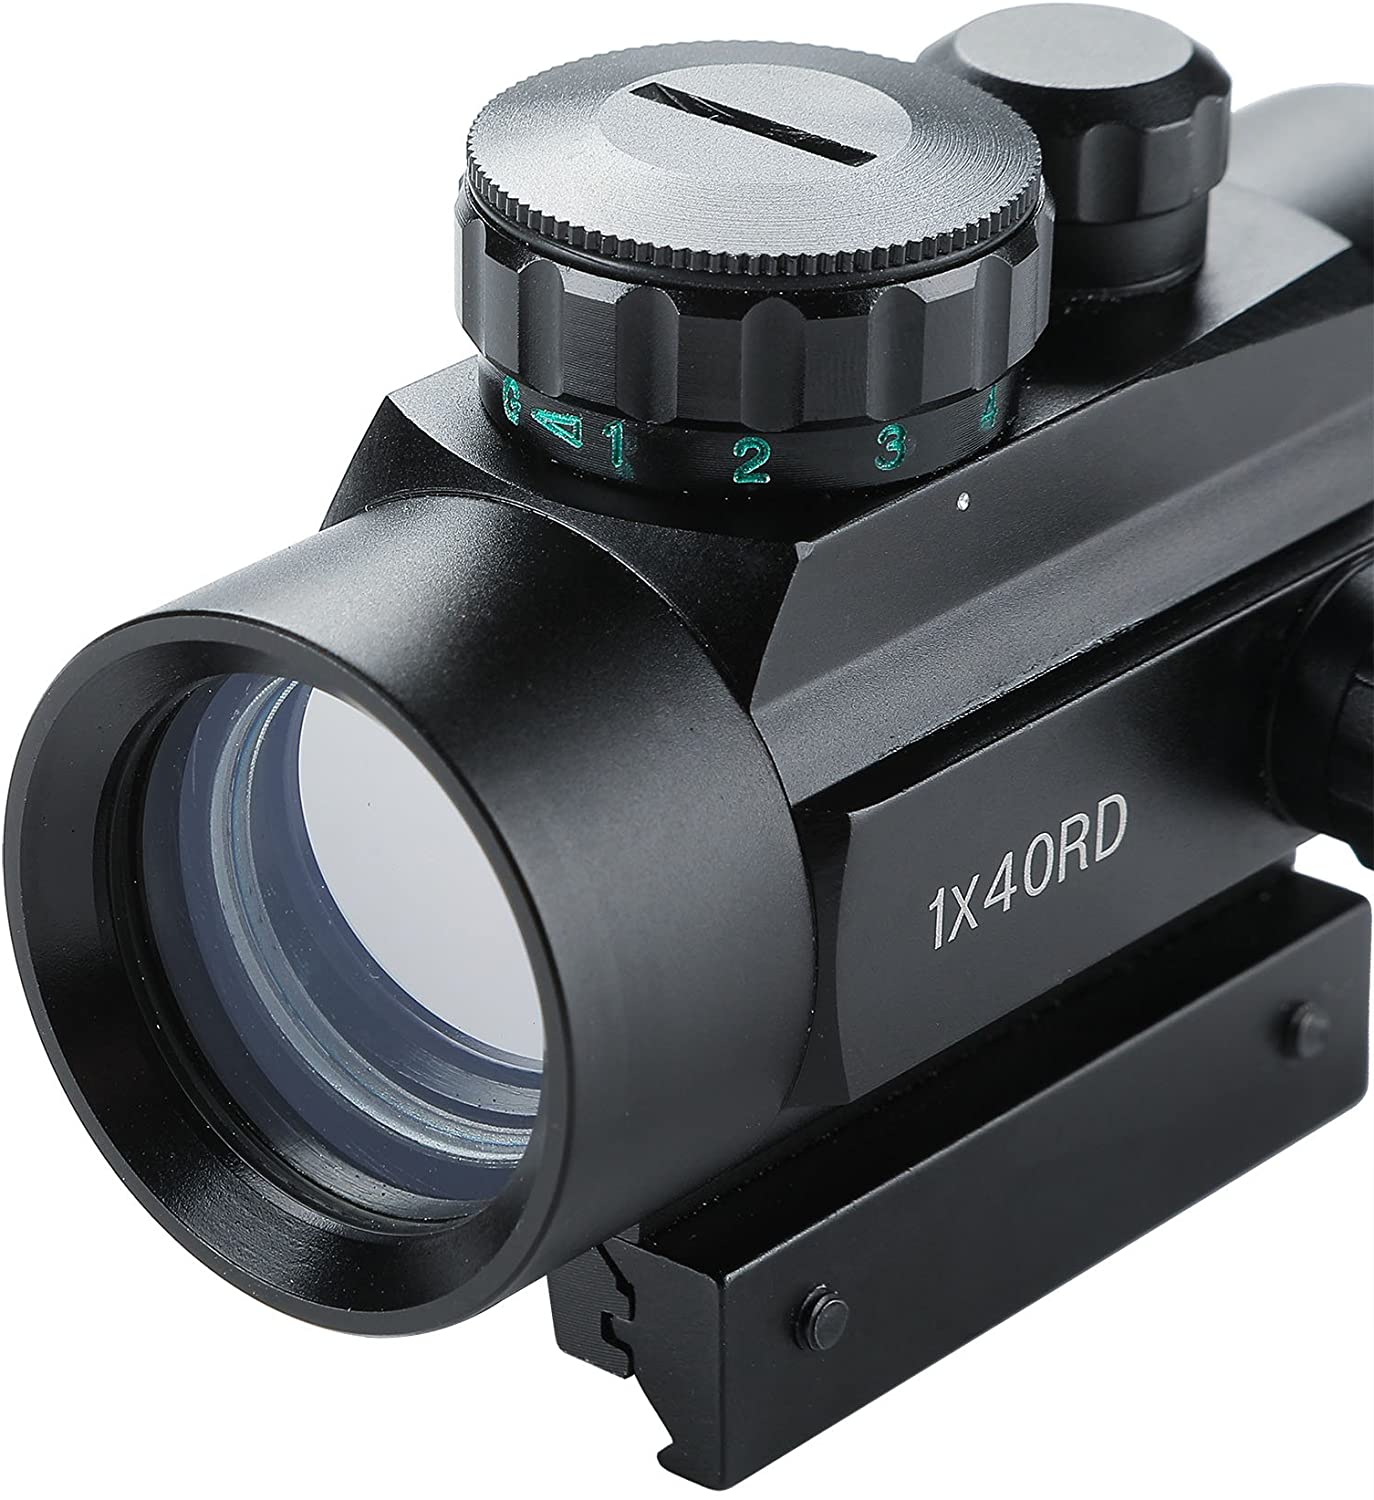 Tactical 1x30mm Reflex Red Green Dot Sight Riflescope